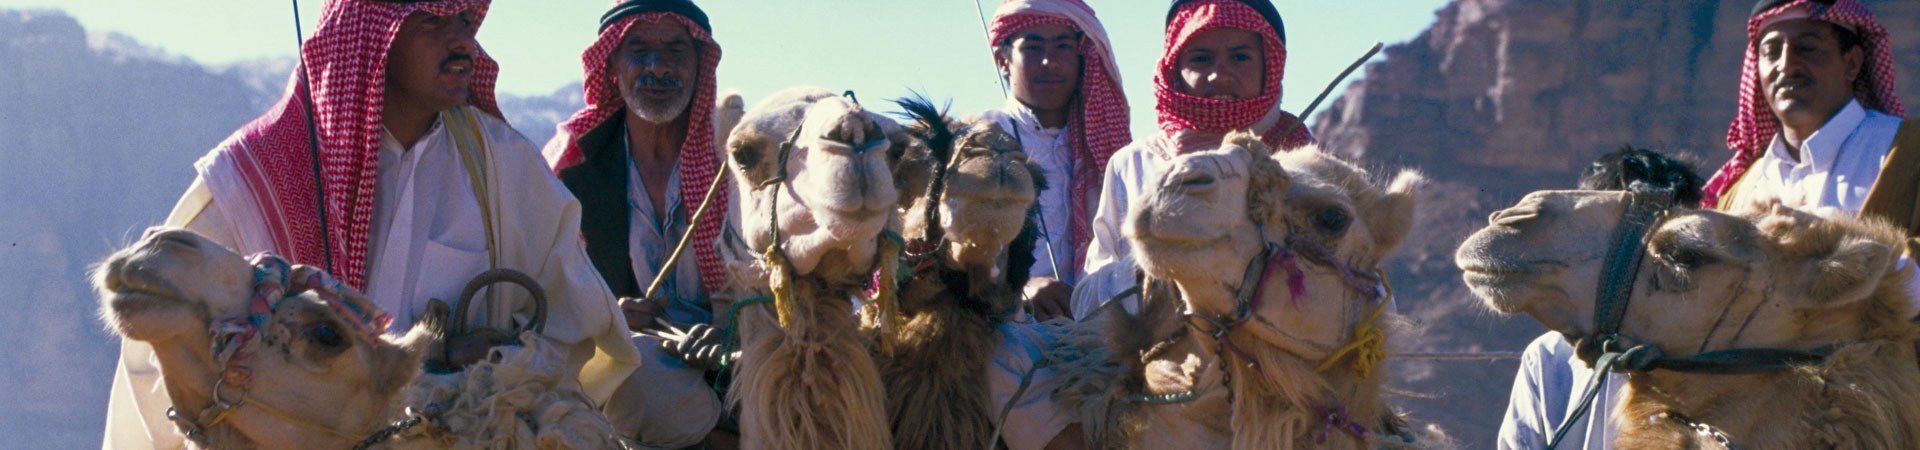 Jordanien: Bedu mit Kamelen im Wadi Rum